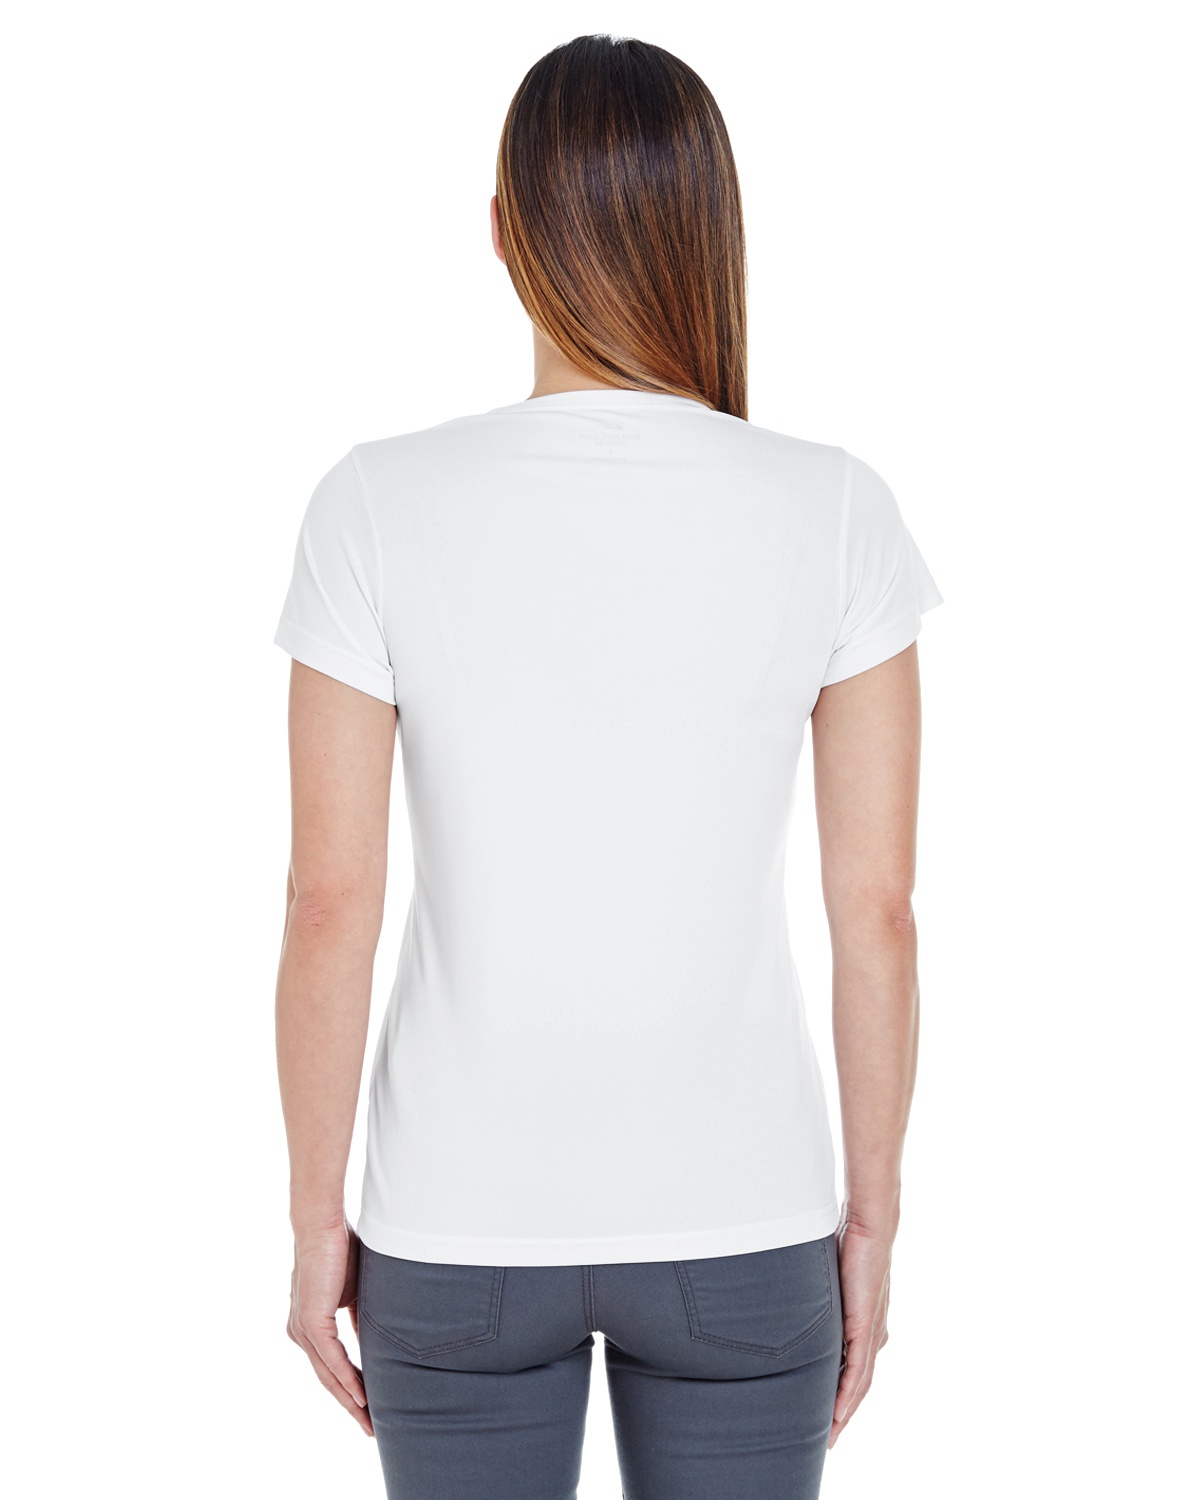 'UltraClub 8420L Ladies Cool & Dry Sport Performance Interlock T-Shirt'